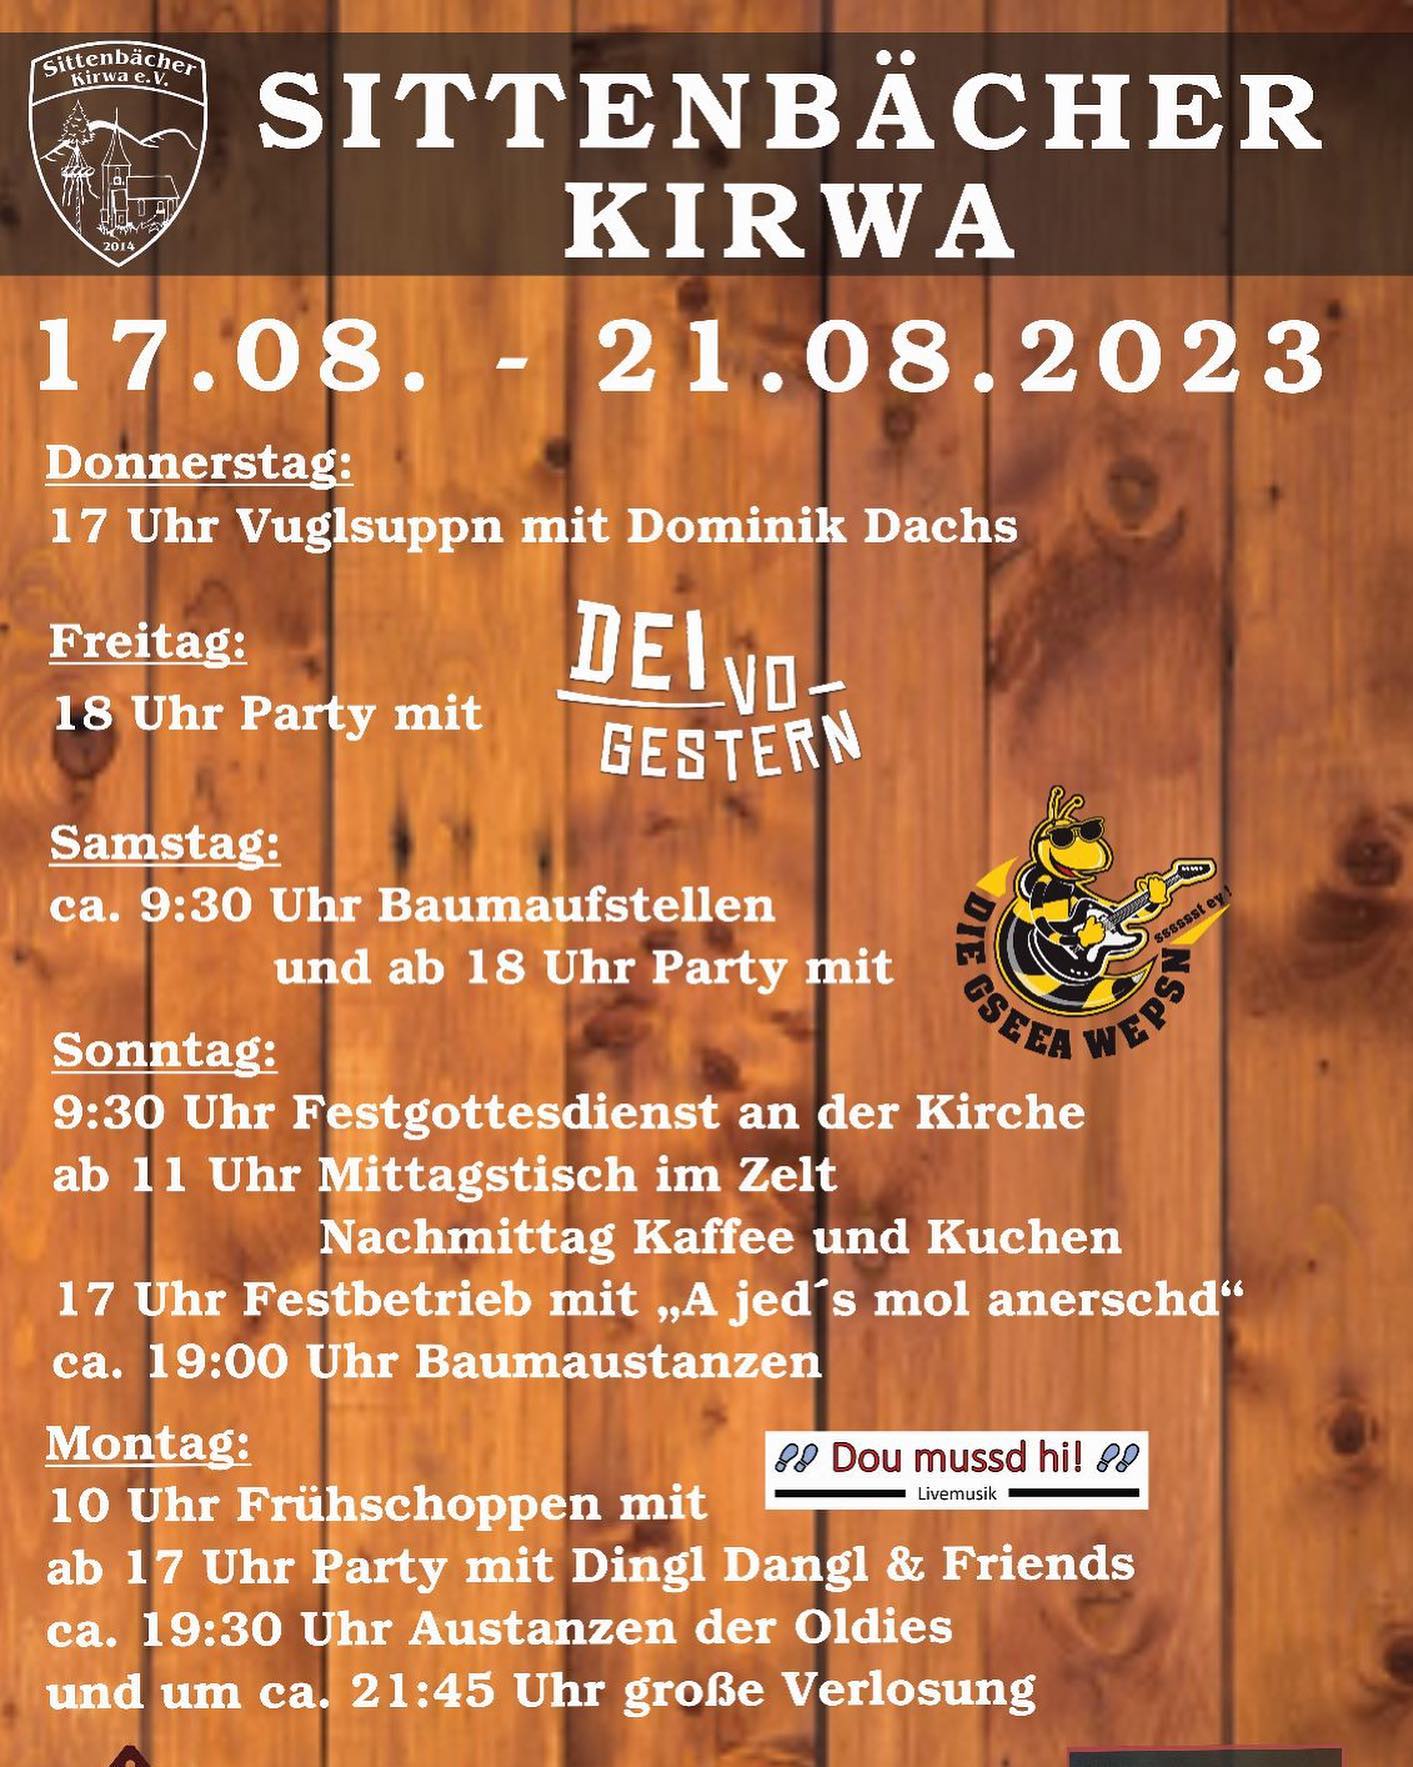 Photo by SittenbaÌcher Kirwa e.V. in Altensittenbach, Bayern, Germany with @manu_hartmann, @dei_vo_gestern, @diegseeawepsn, @christof.schaefer84, and @dominikdachs91. May be an image of poster and text that says 'SittenbaÌ Kirwae.V. SITTEN.jpg